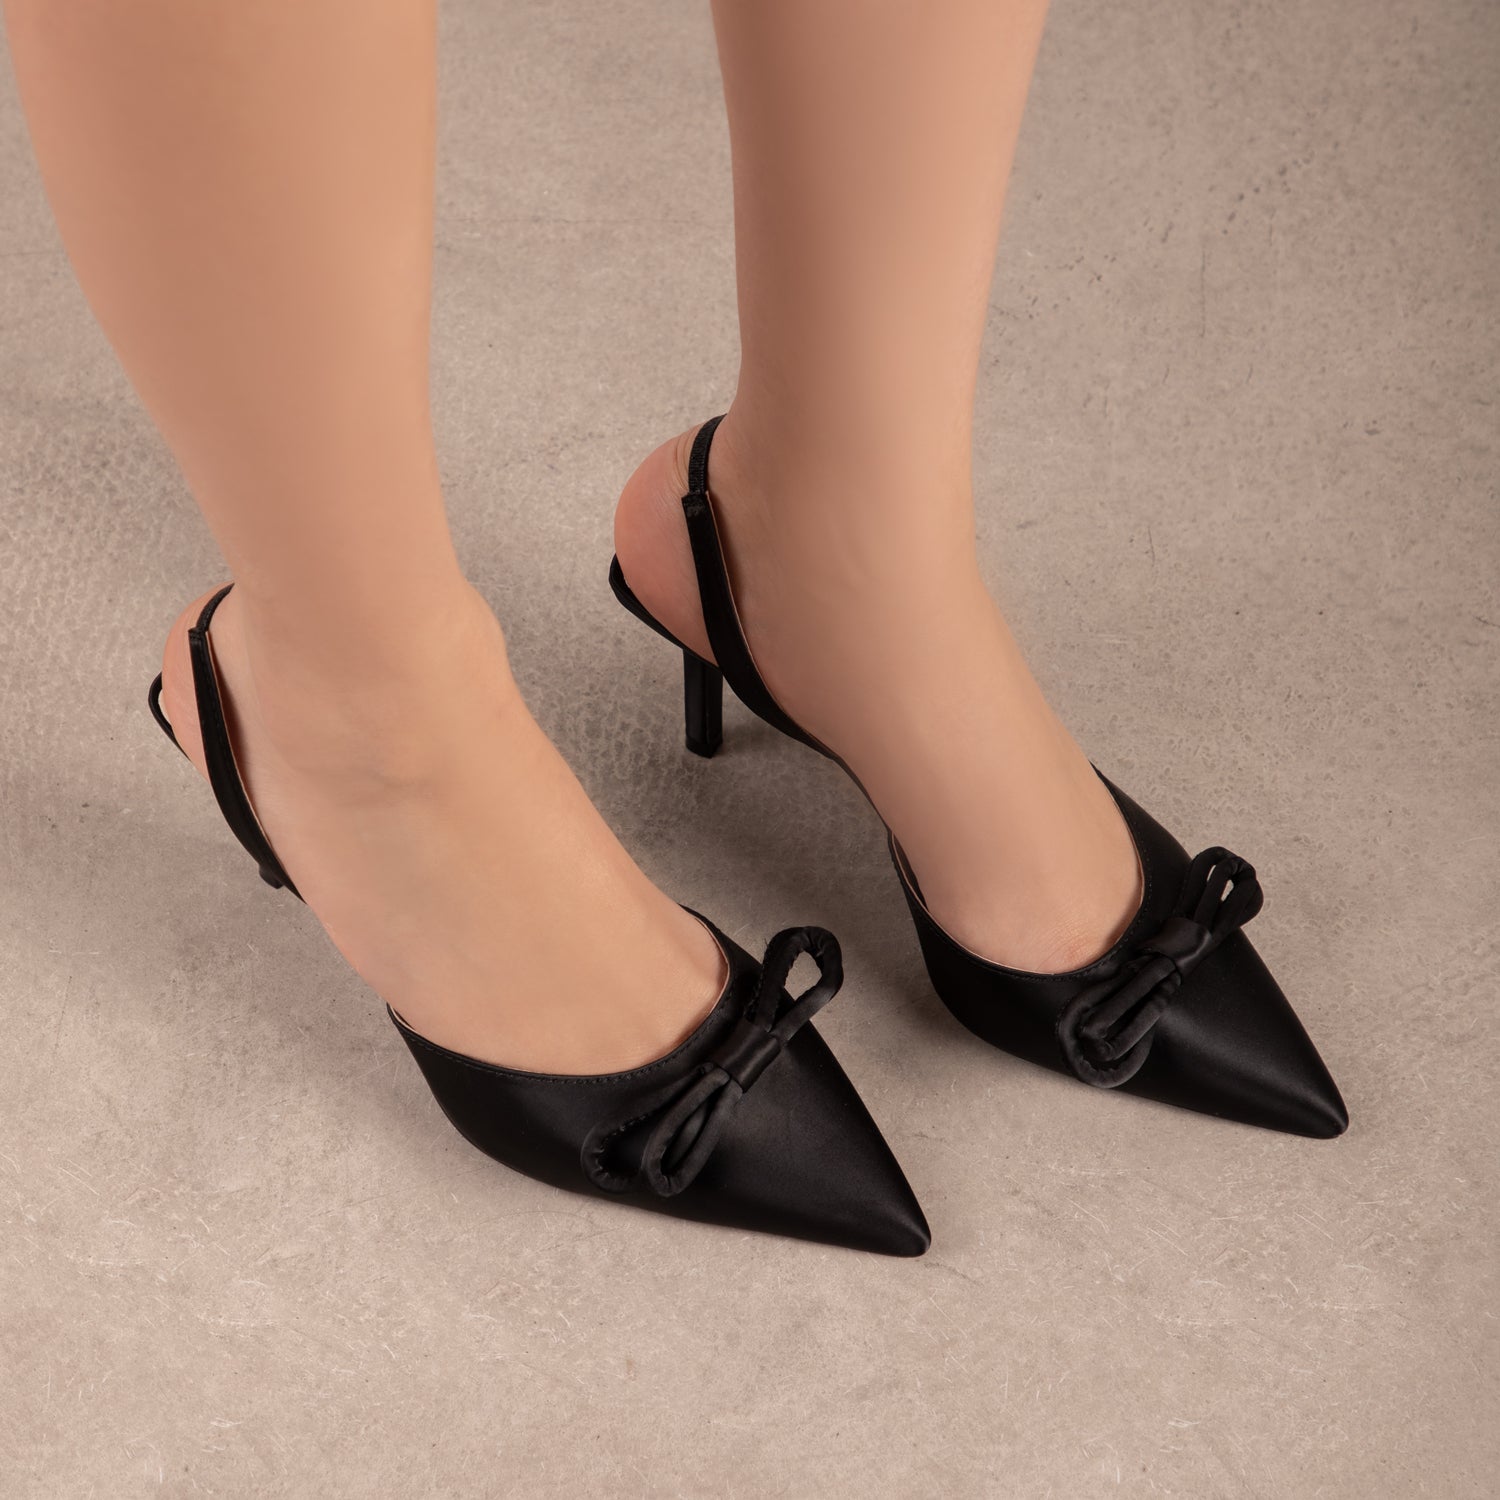 RAID Elenaa Heeled Sandals in Black Satin